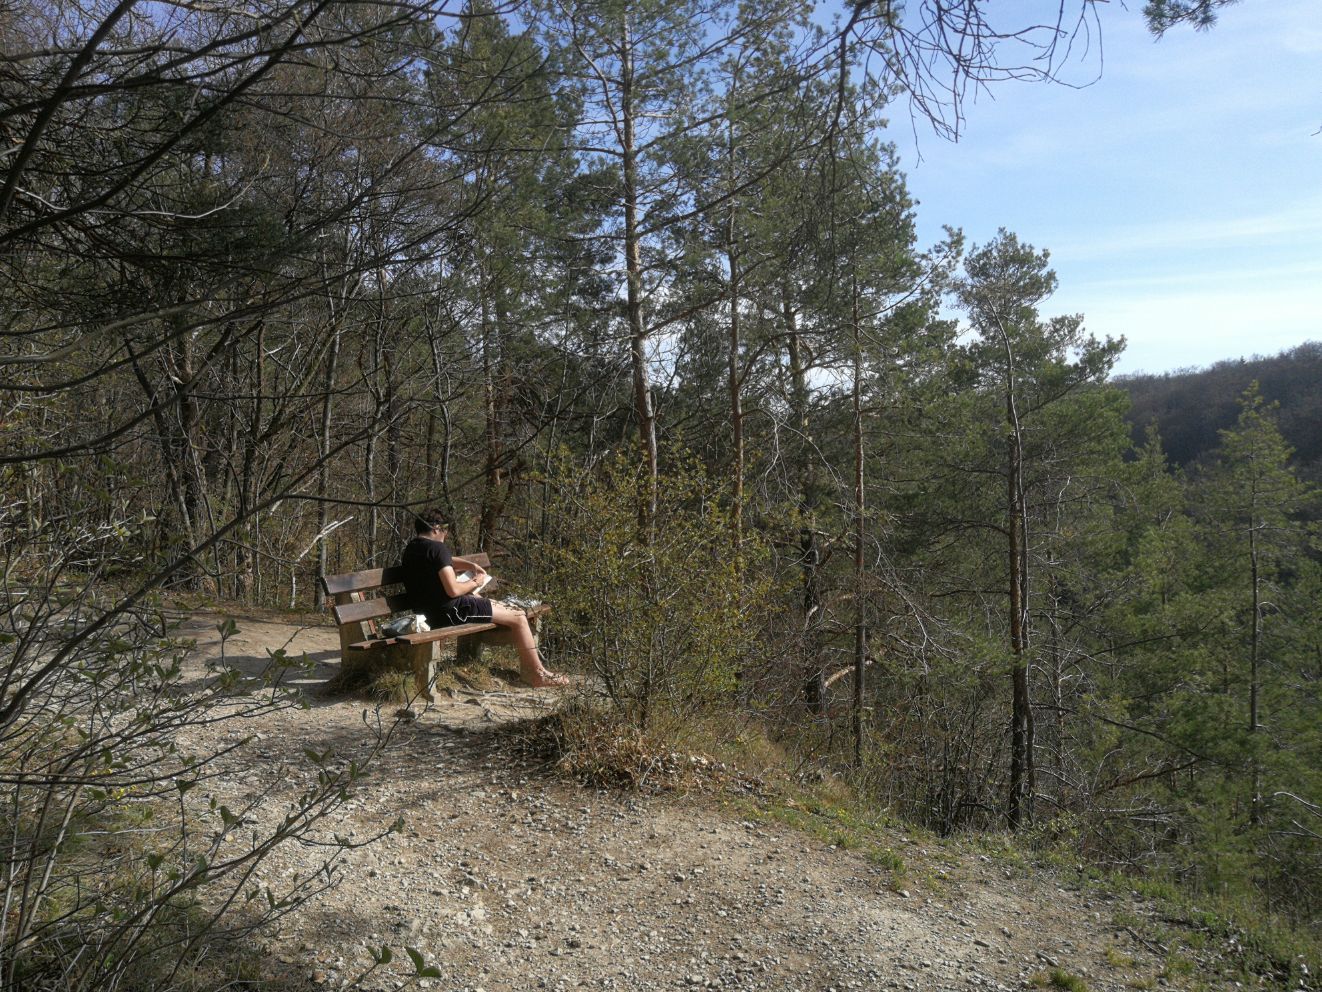 昨天去散步，在山林深处，看到了一位坐在椅子上默默读书的德国小伙子！这样的时代，又是在疫情下，能这样专